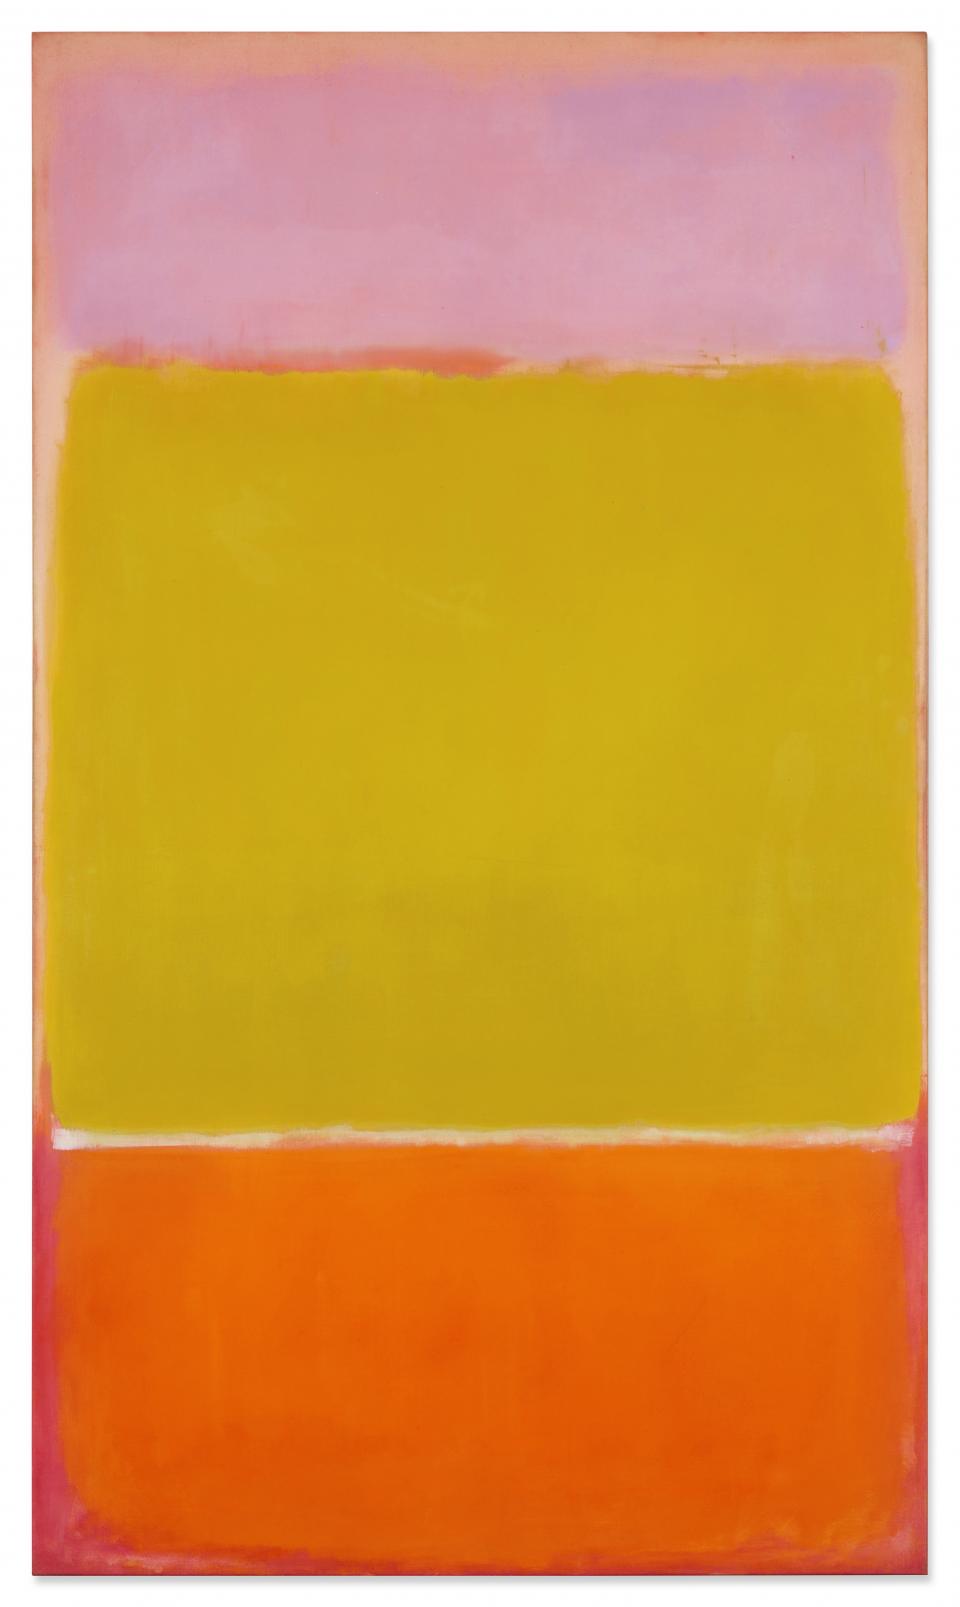  Das Bild "No. 7" des US-Künstlers Mark Rothko, wurde für rund 82,5 Millionen Dollar versteigert